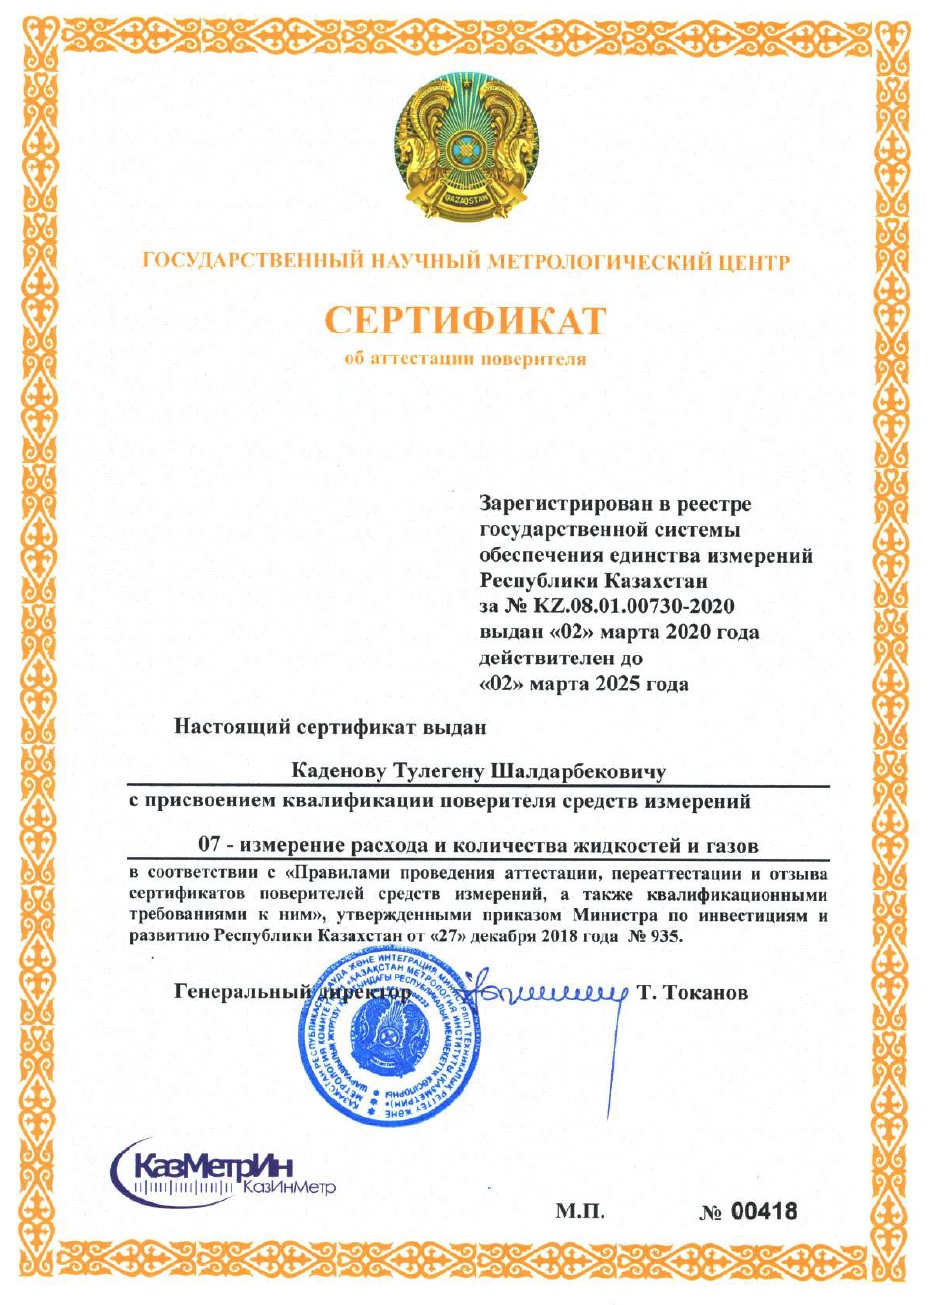 Сертификат поверителя измерении расхода и количества жидкостей и газов. №00418. Каденов Т.Ш.